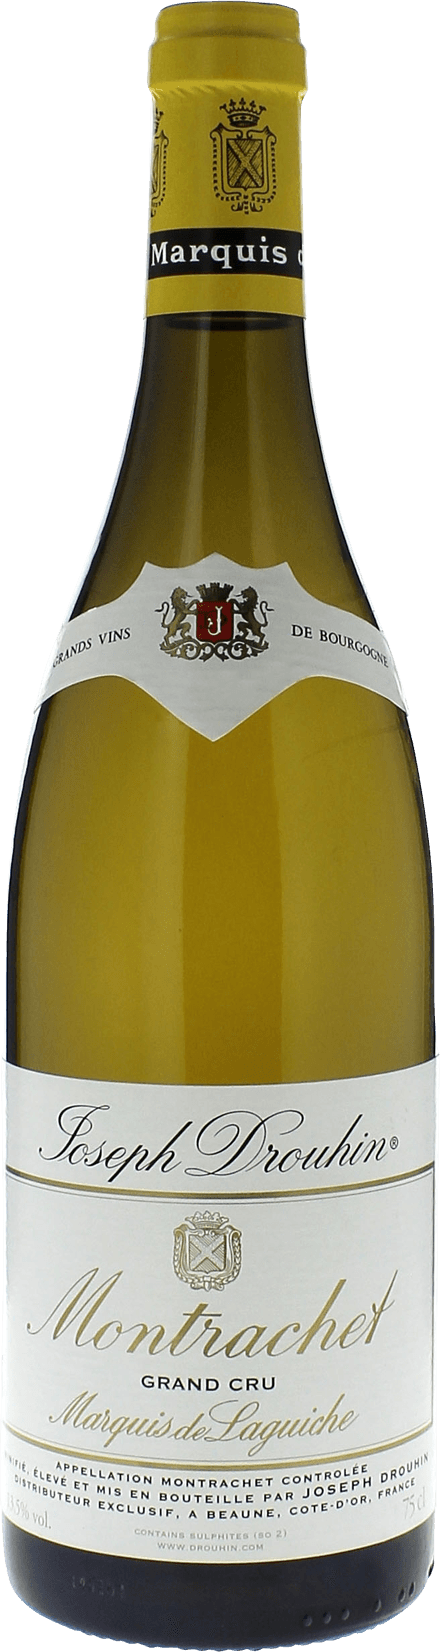 Montrachet marquis de laguiche 2016 Domaine Joseph DROUHIN, Bourgogne blanc